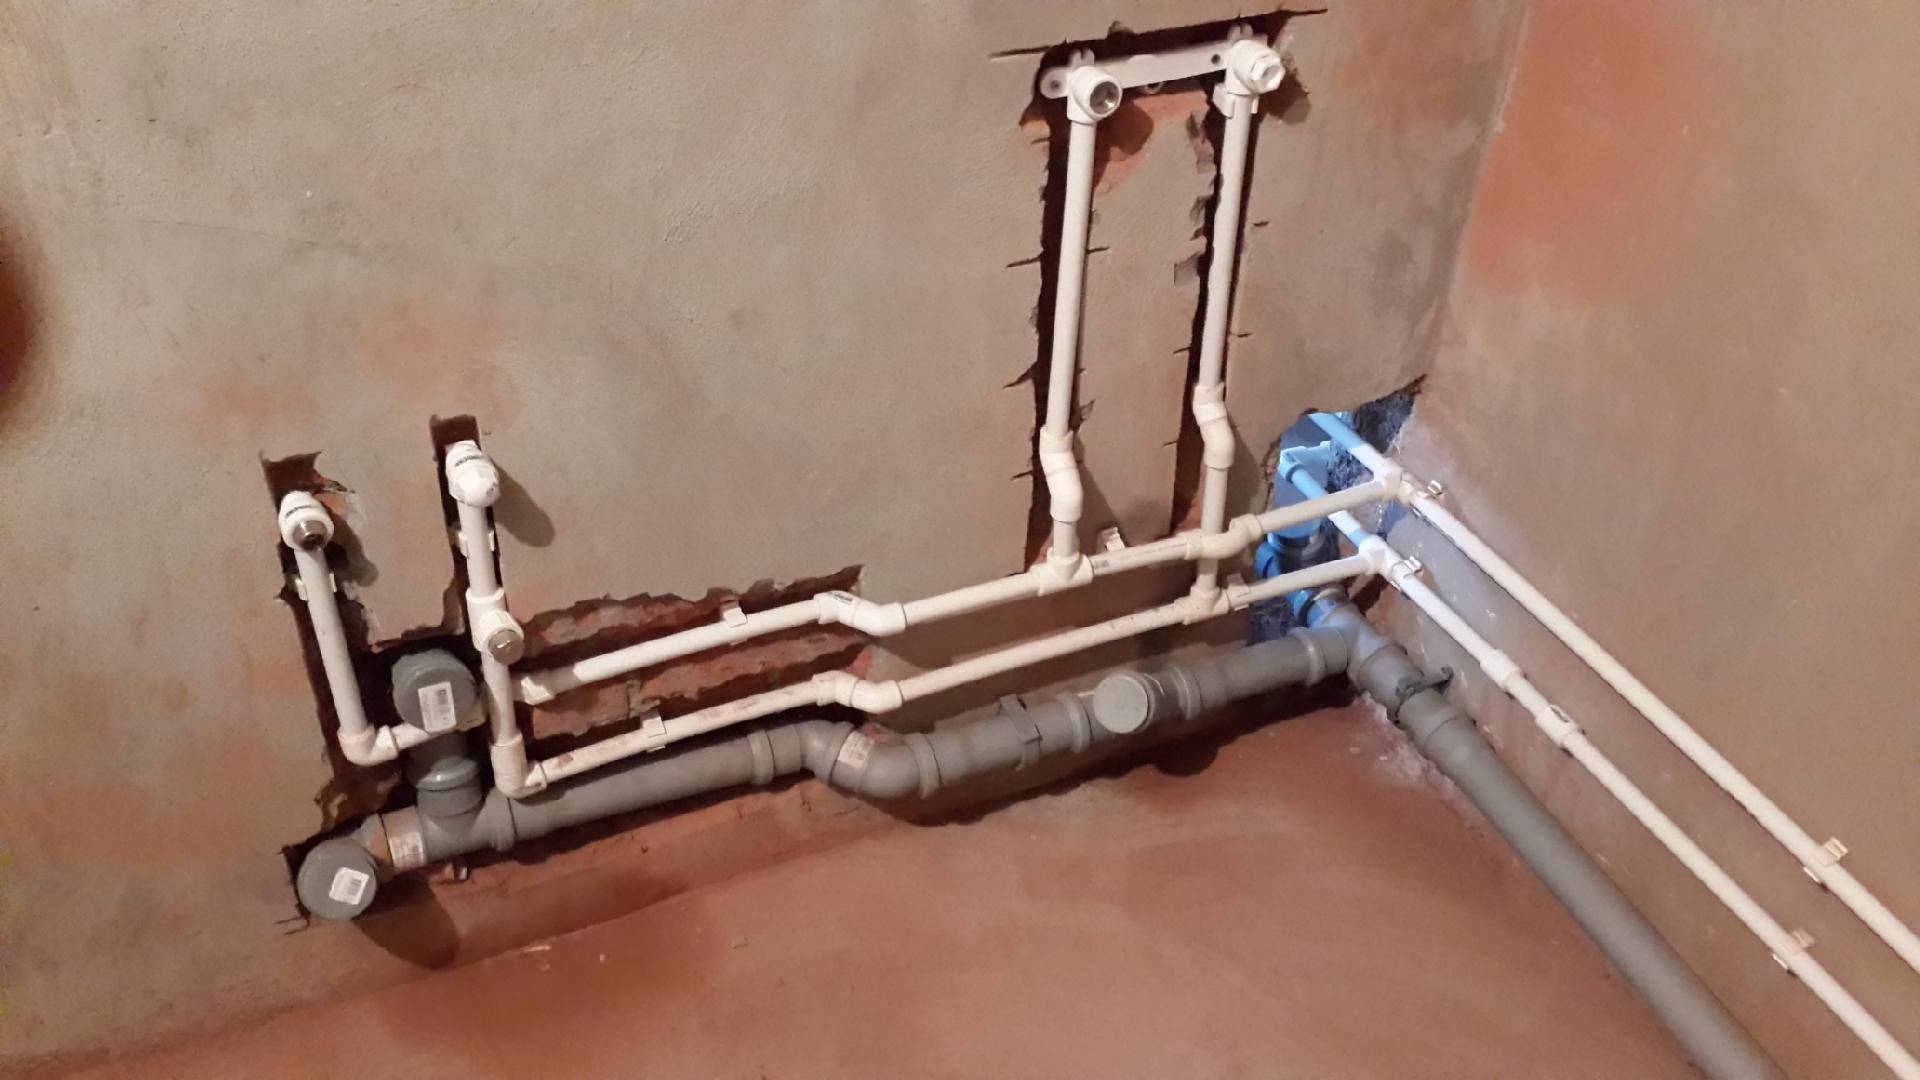 Самостоятельная замена стояков водоснабжения в квартире: полная инструкция